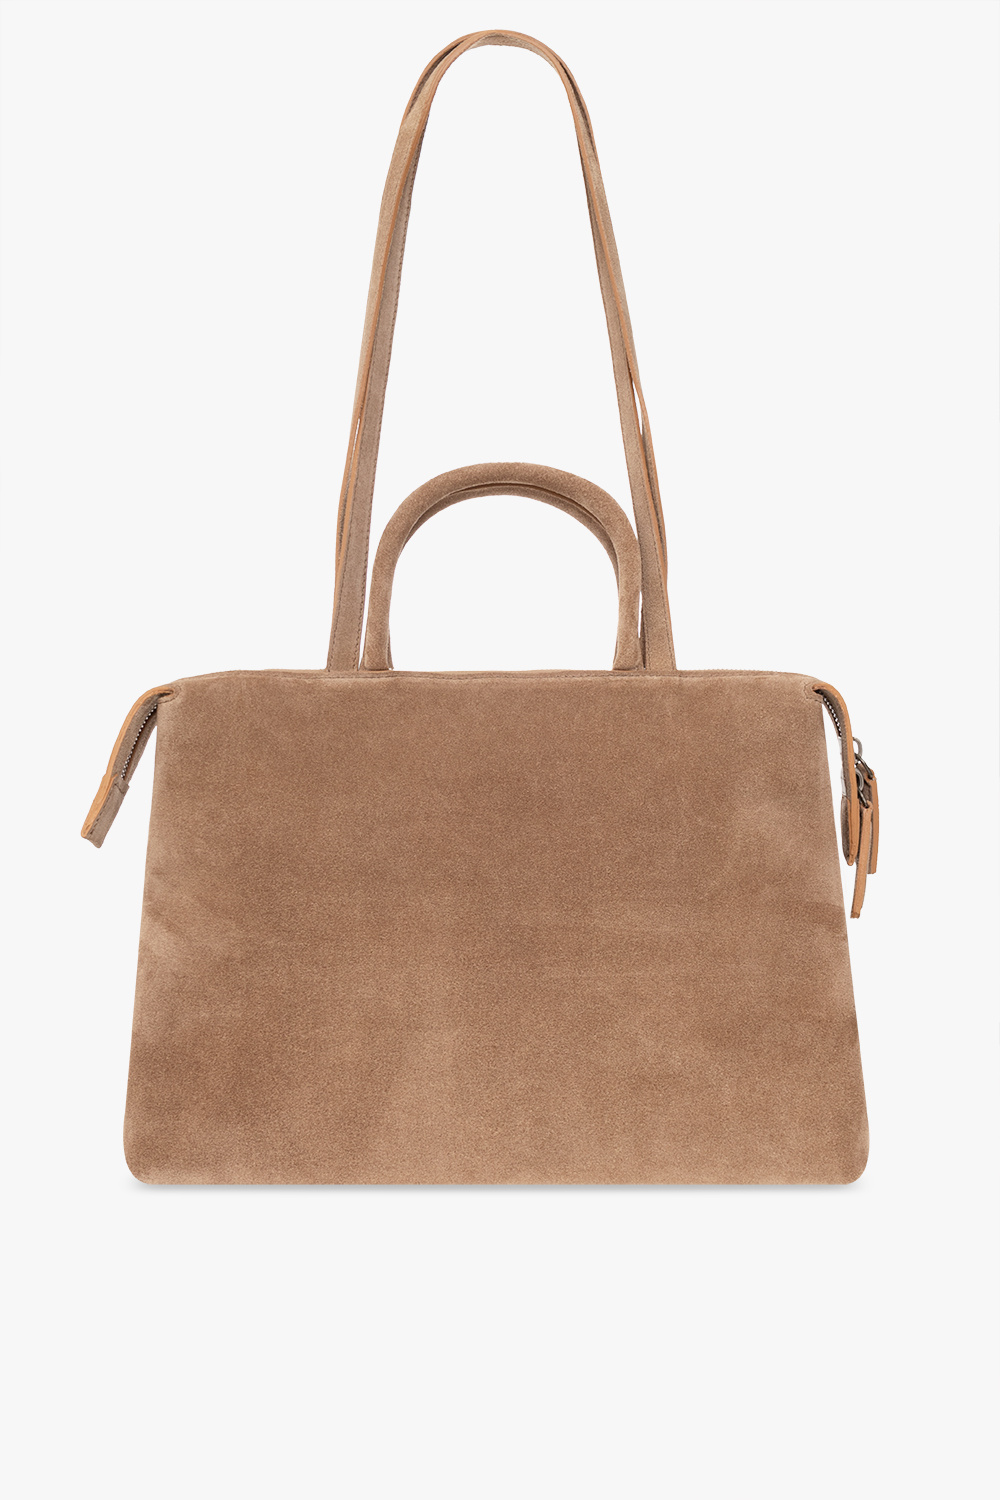 Marsell ‘Dritta’ handbag